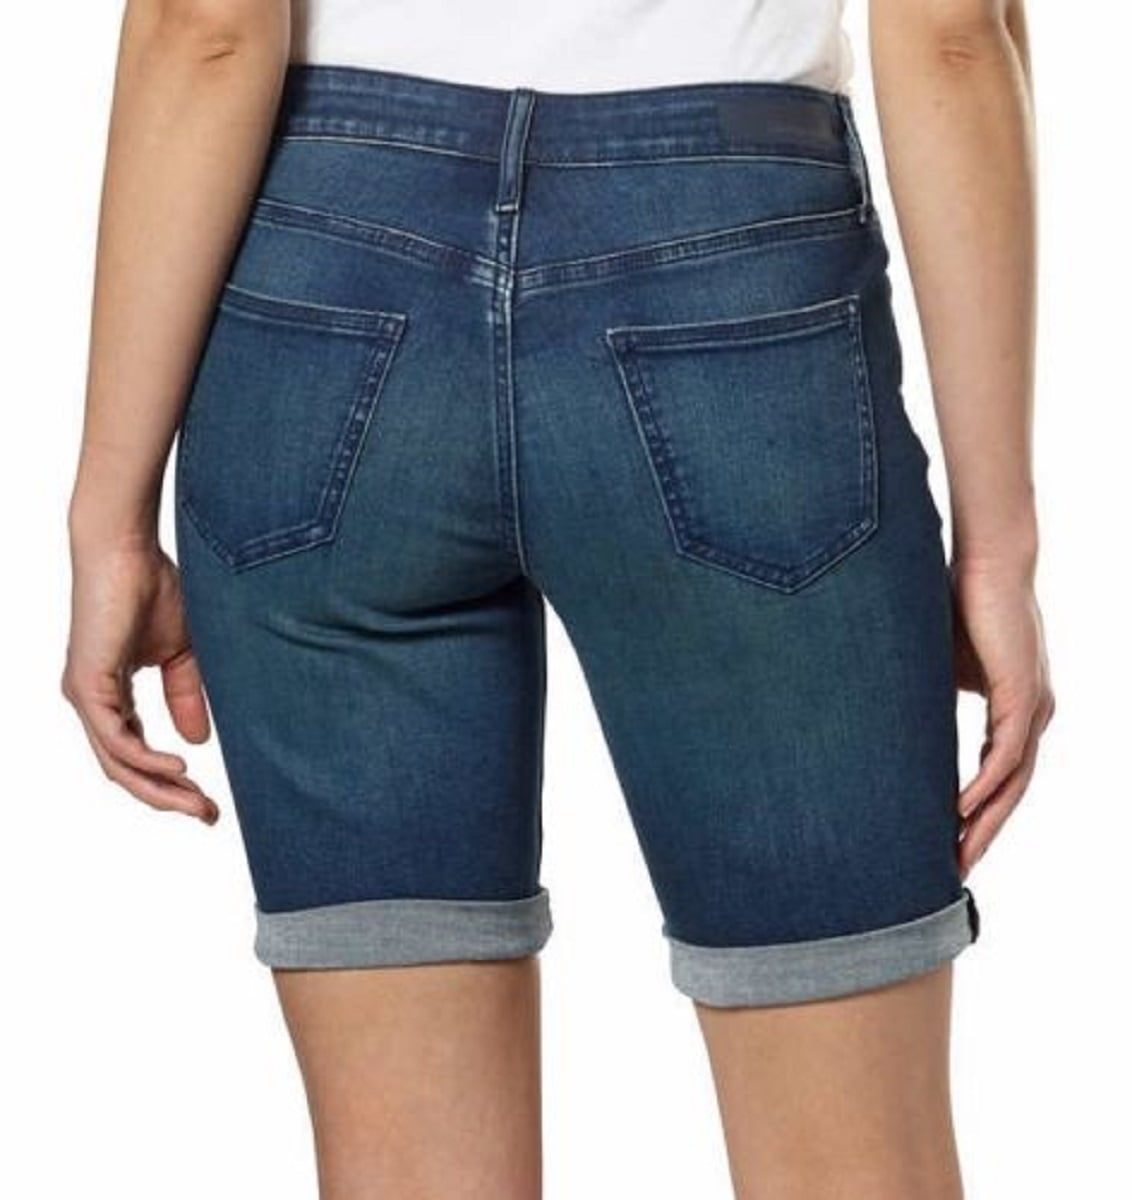 Introducir 79+ imagen calvin klein jeans city shorts